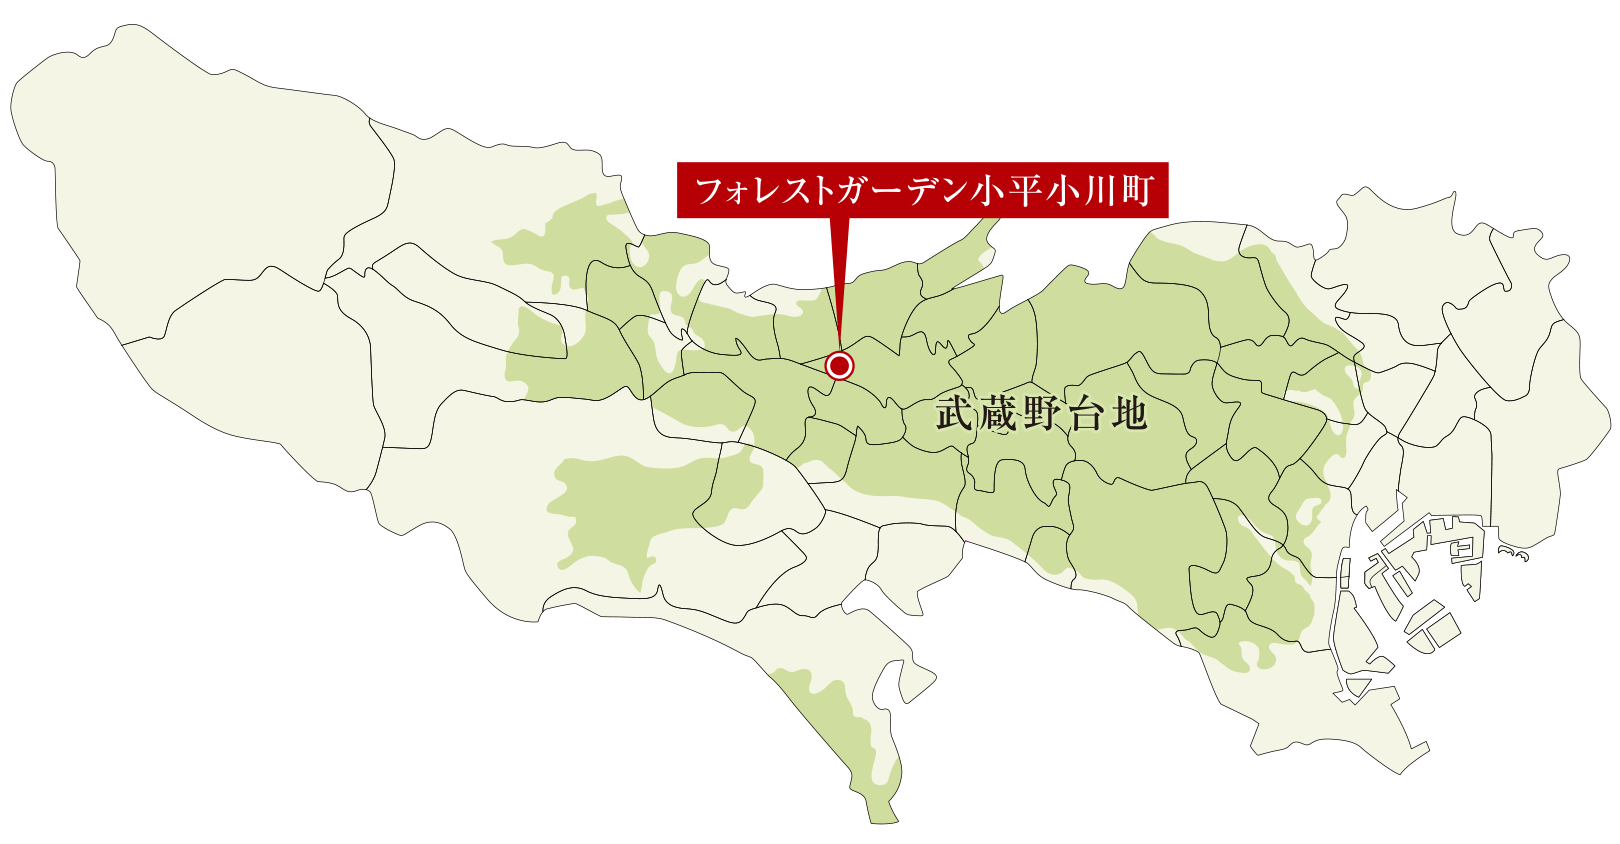 武蔵野台地地盤概念図